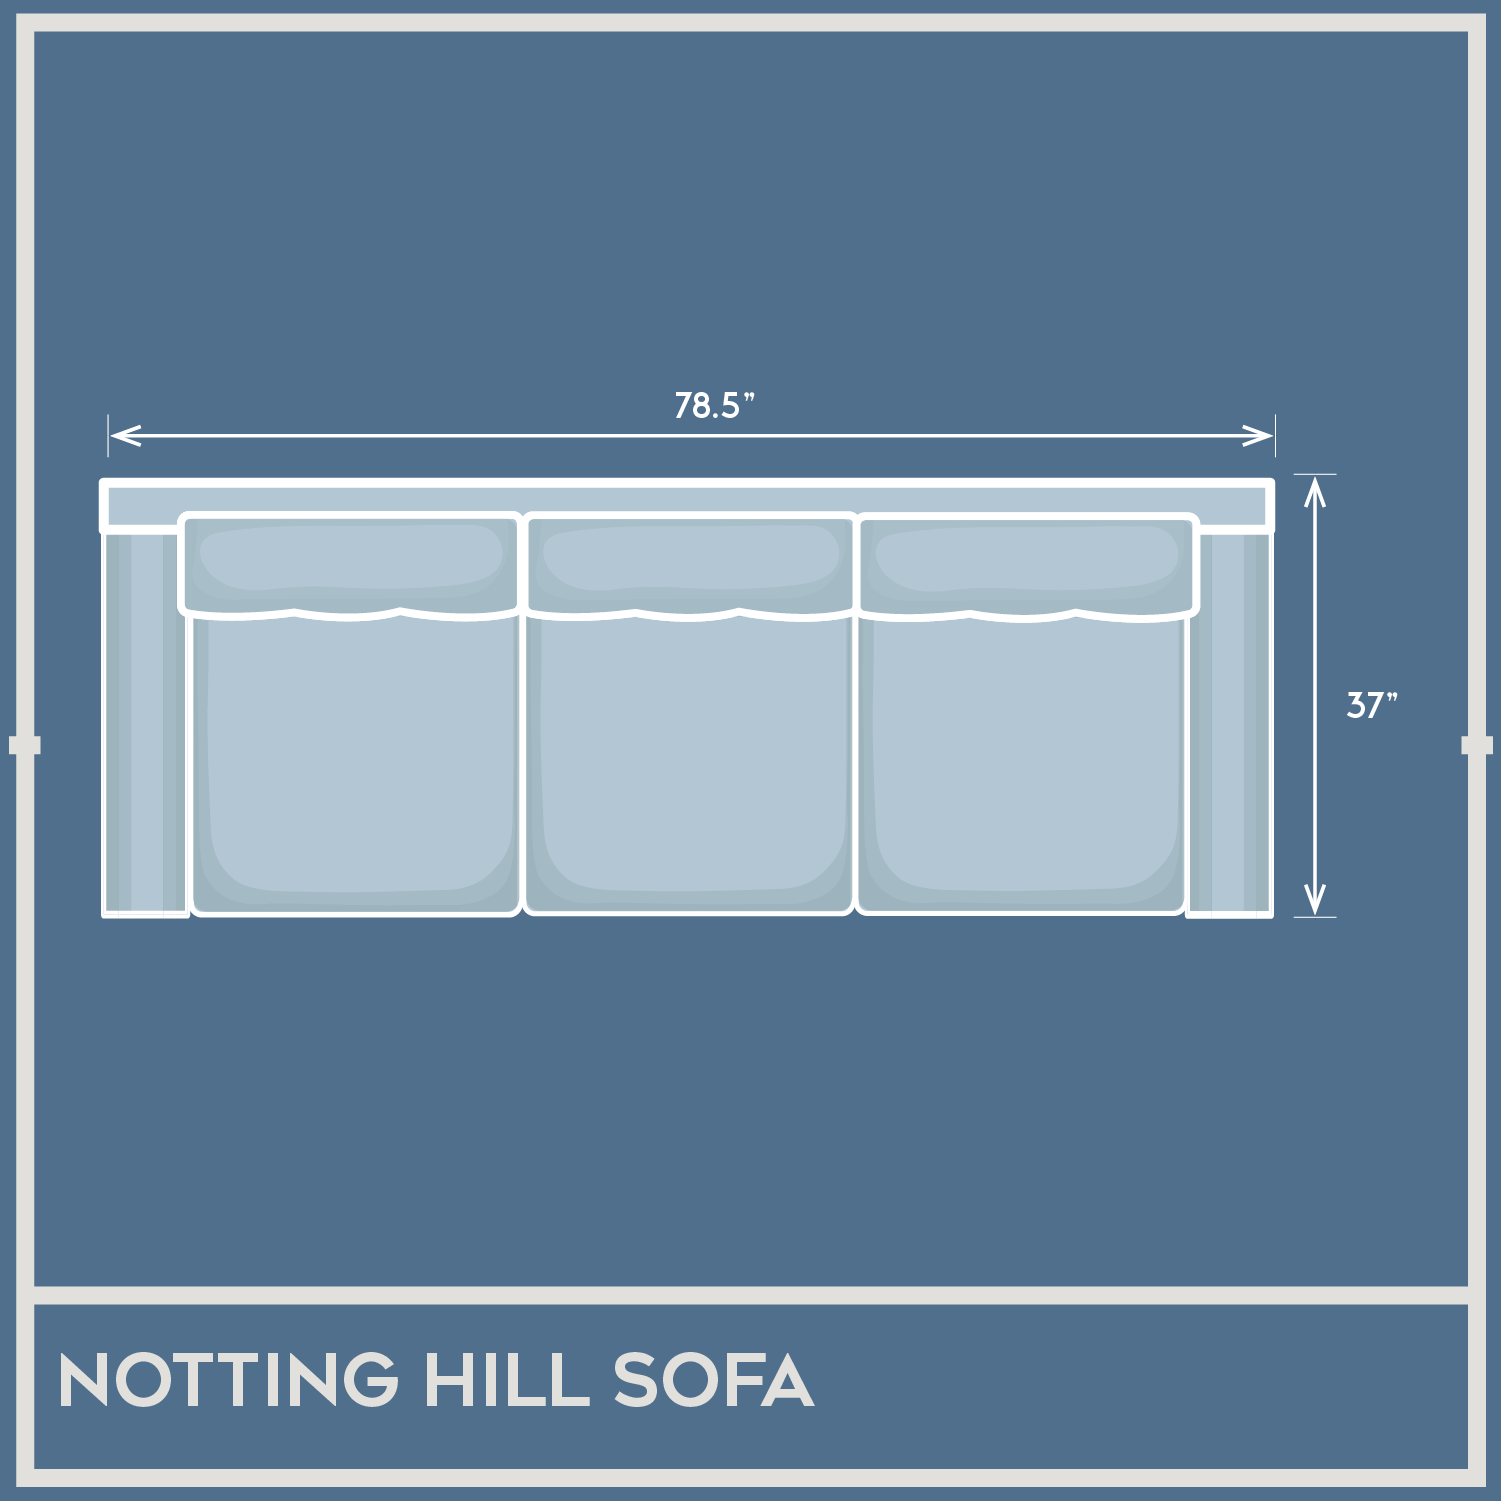 Addington Co Notting Hill Sofa